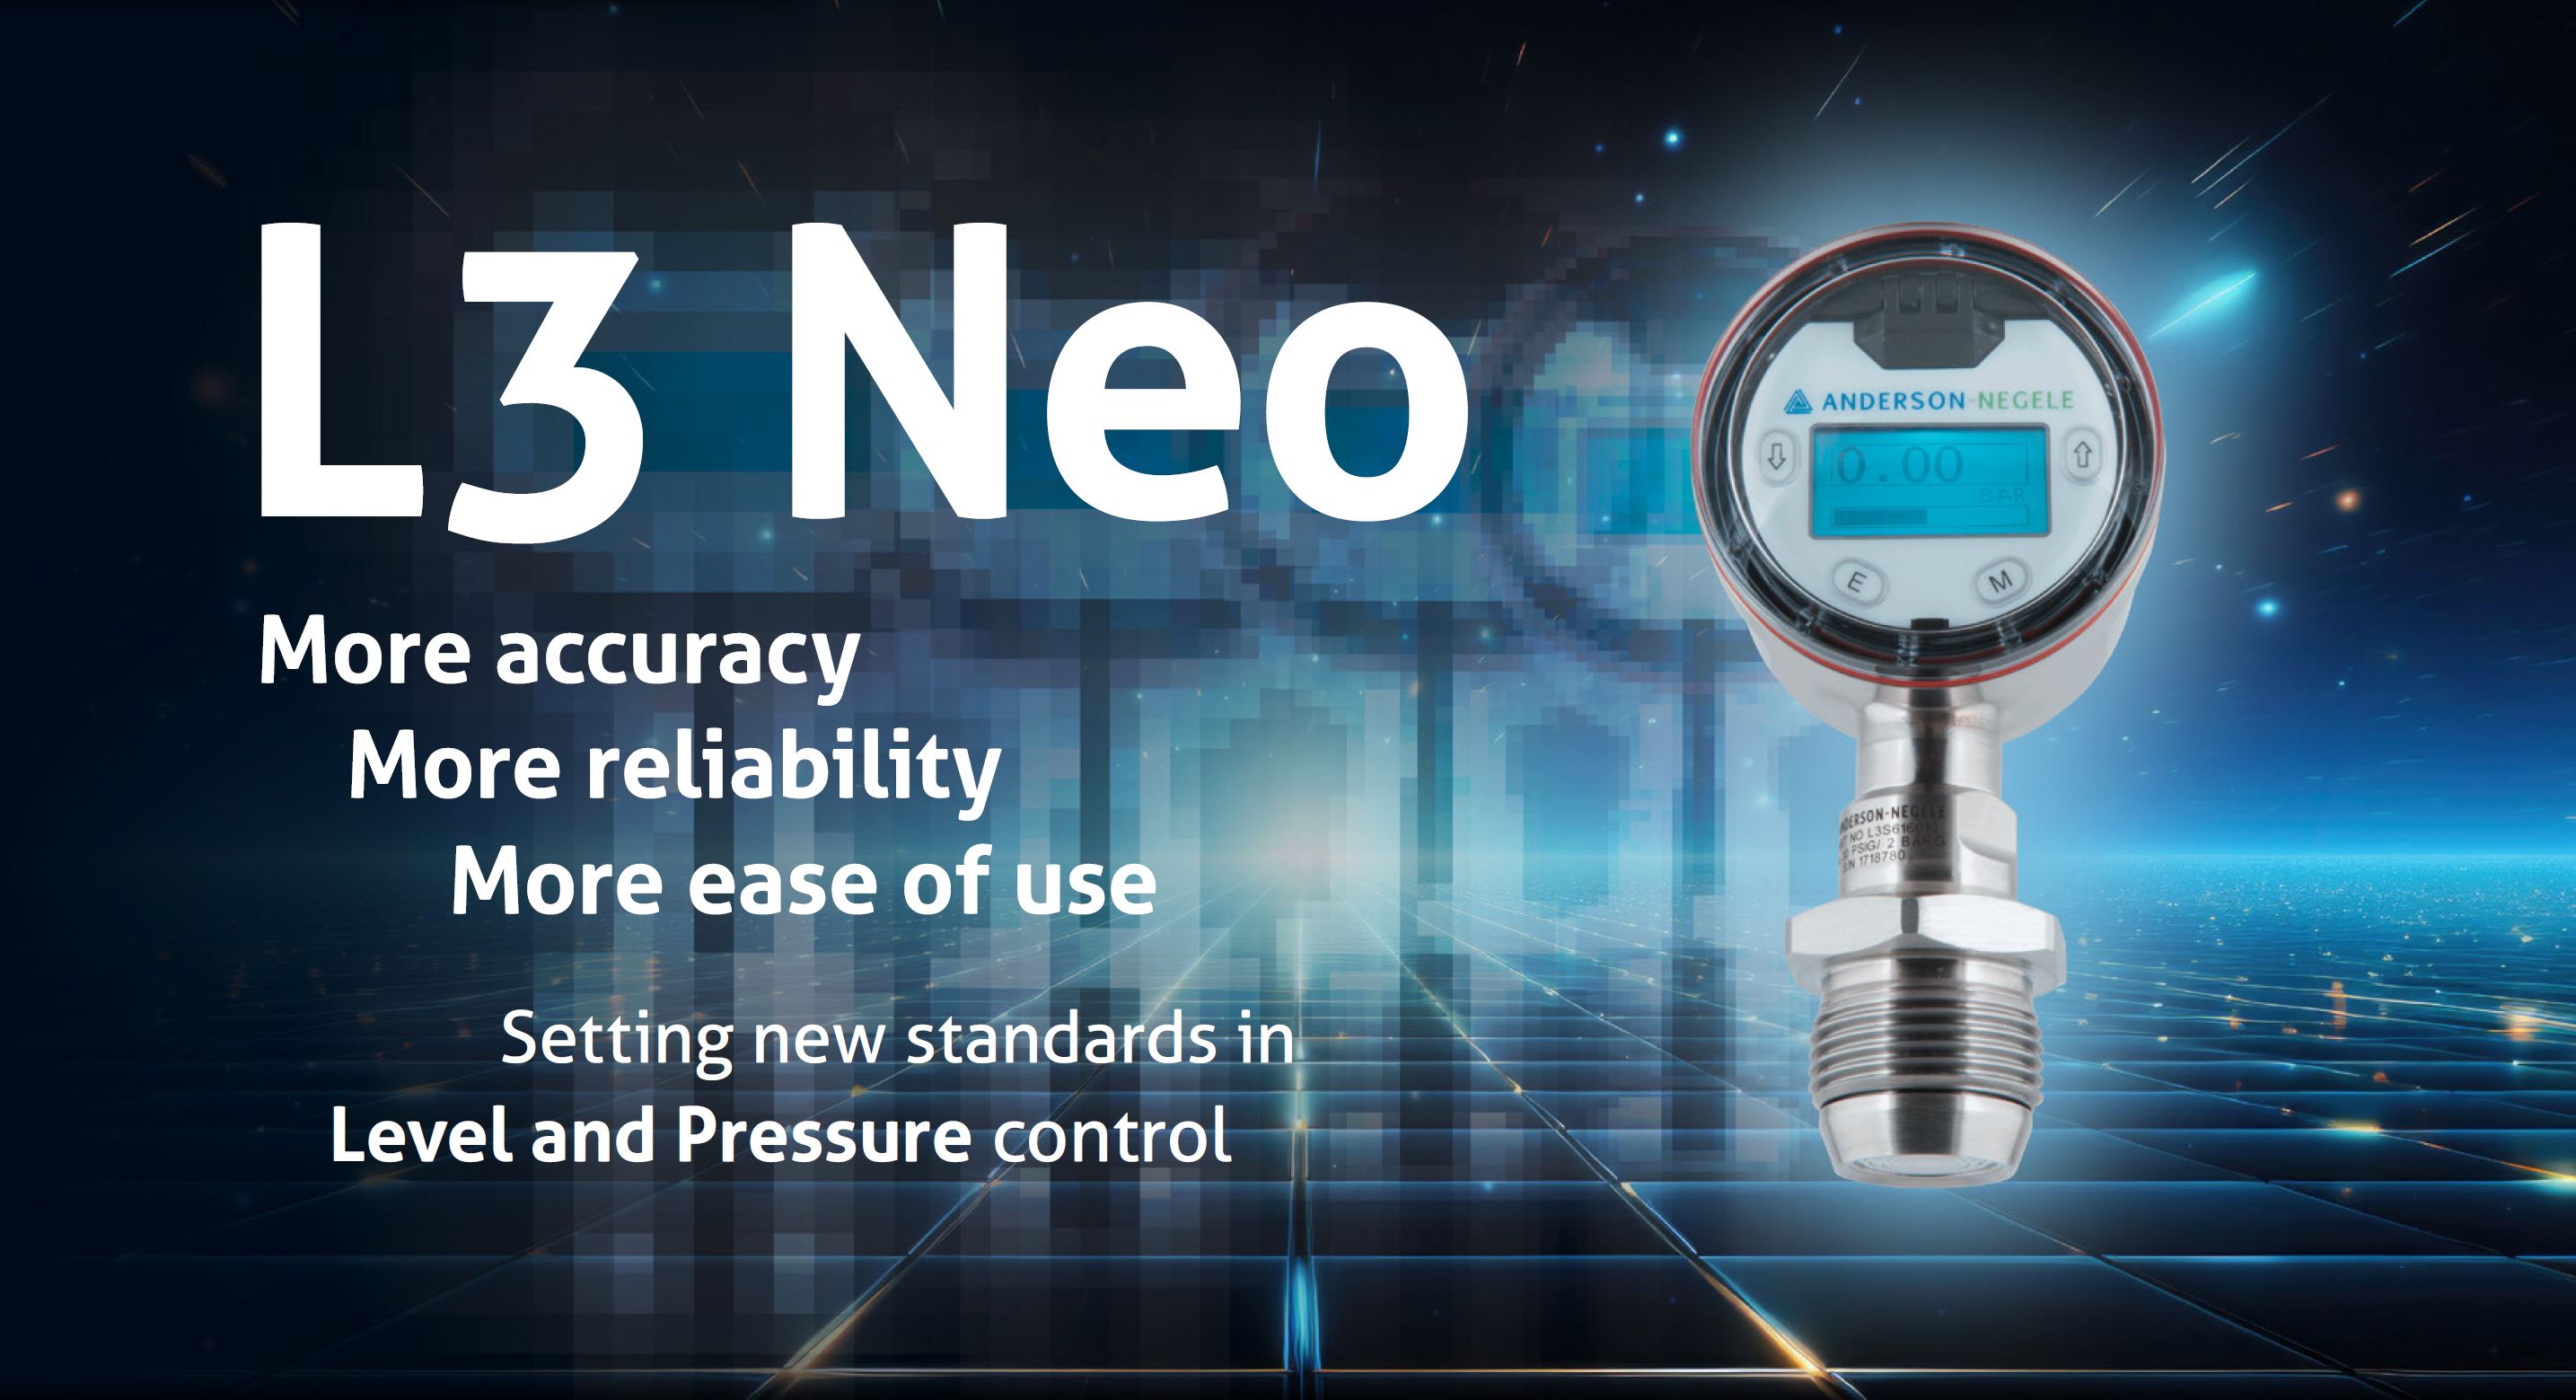 Nieuwe normen stellen in niveau- en drukbeheersing: L3 Neo is nu beschikbaar!